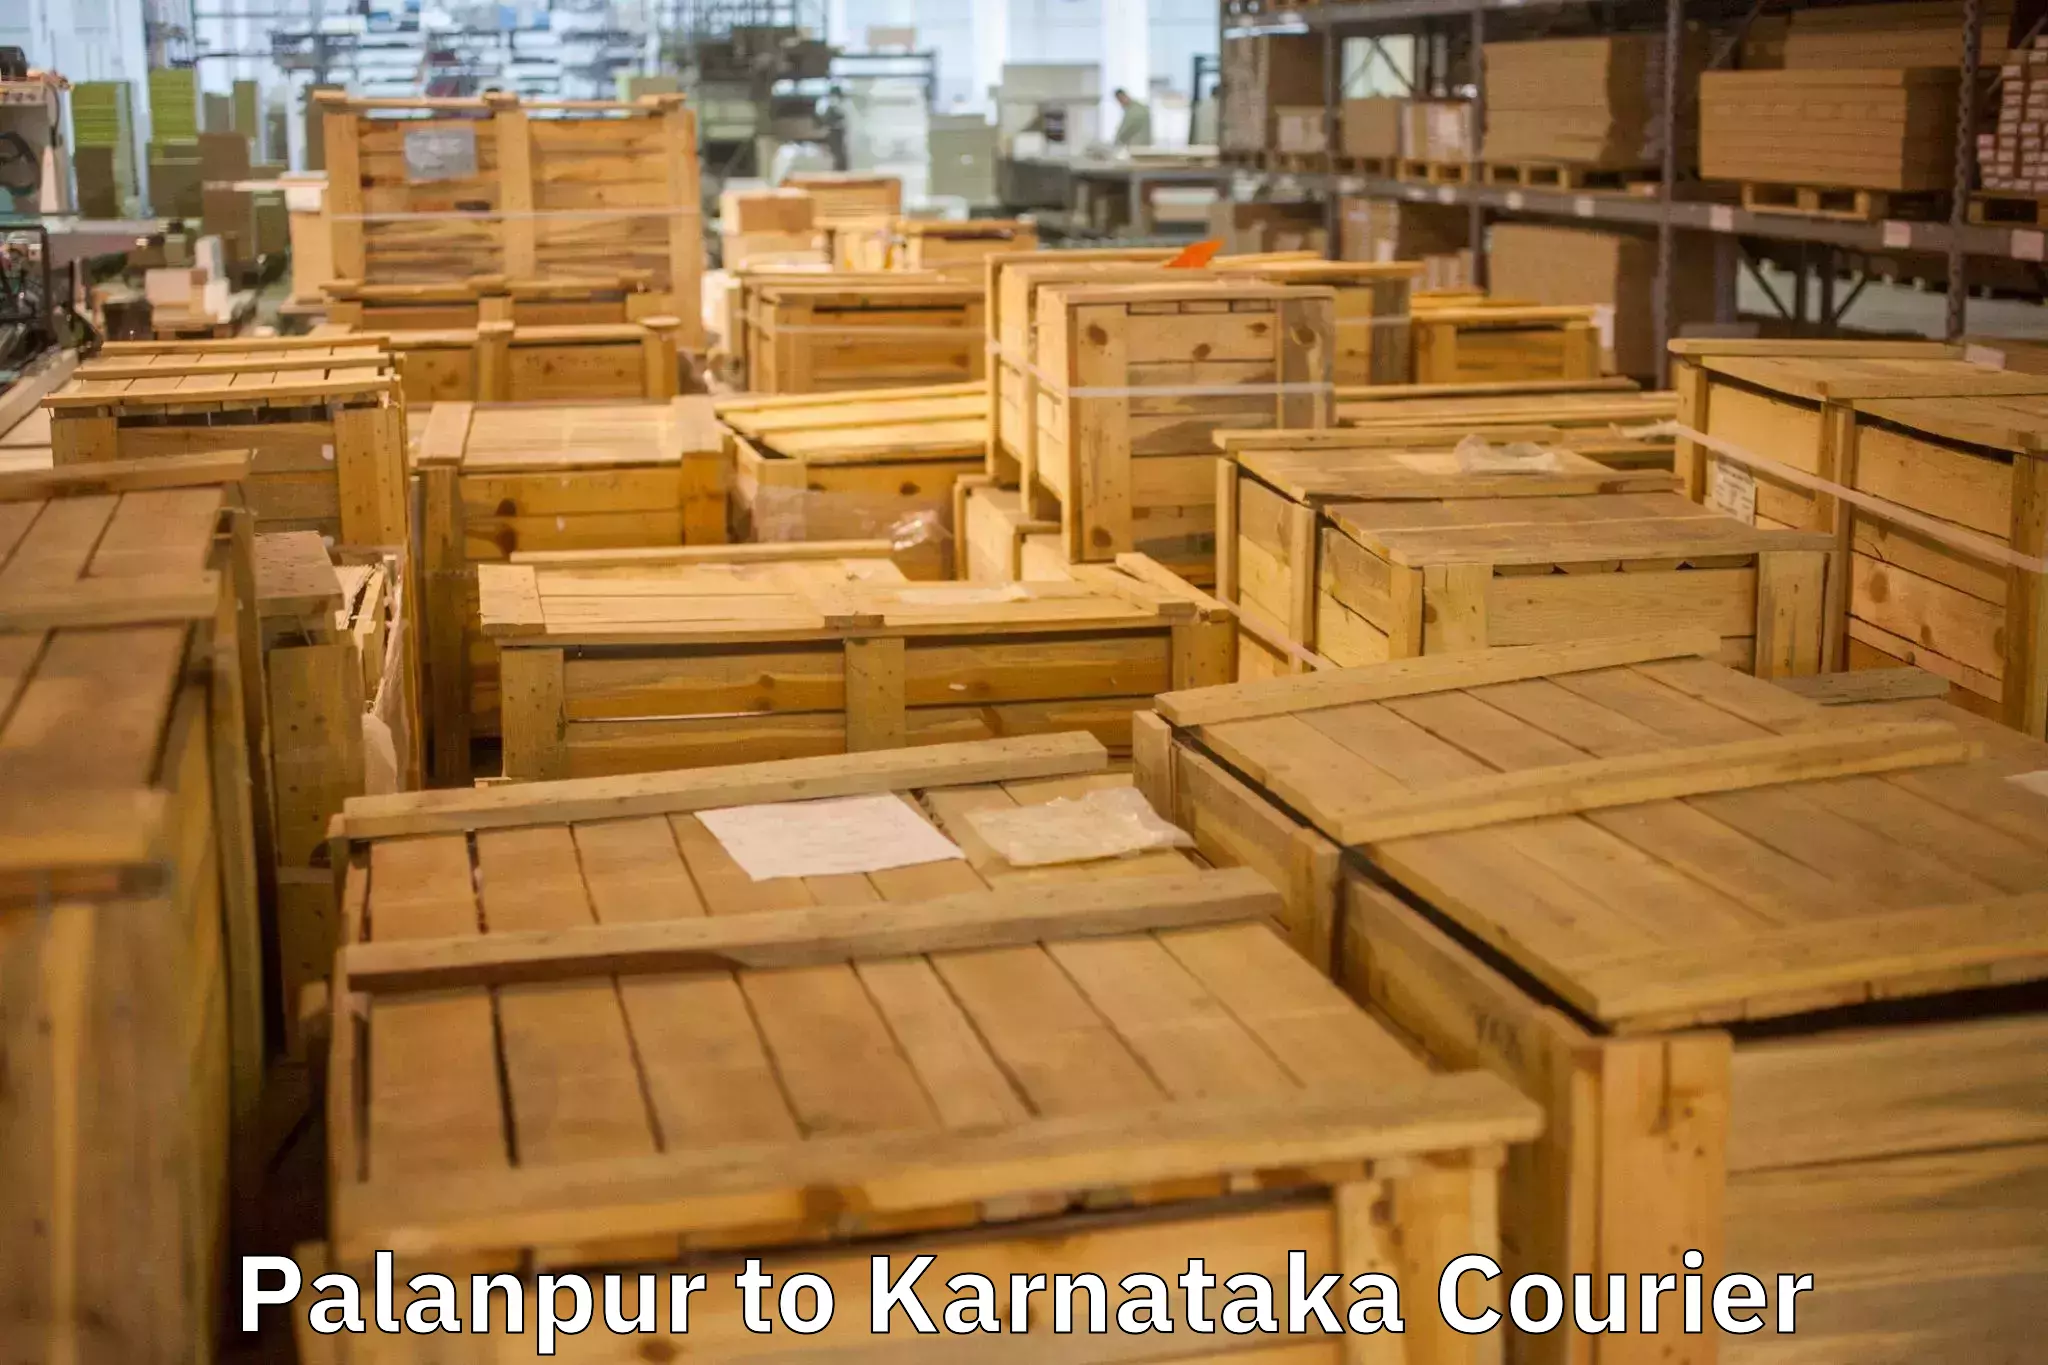 Furniture transport specialists Palanpur to Krishnarajpete